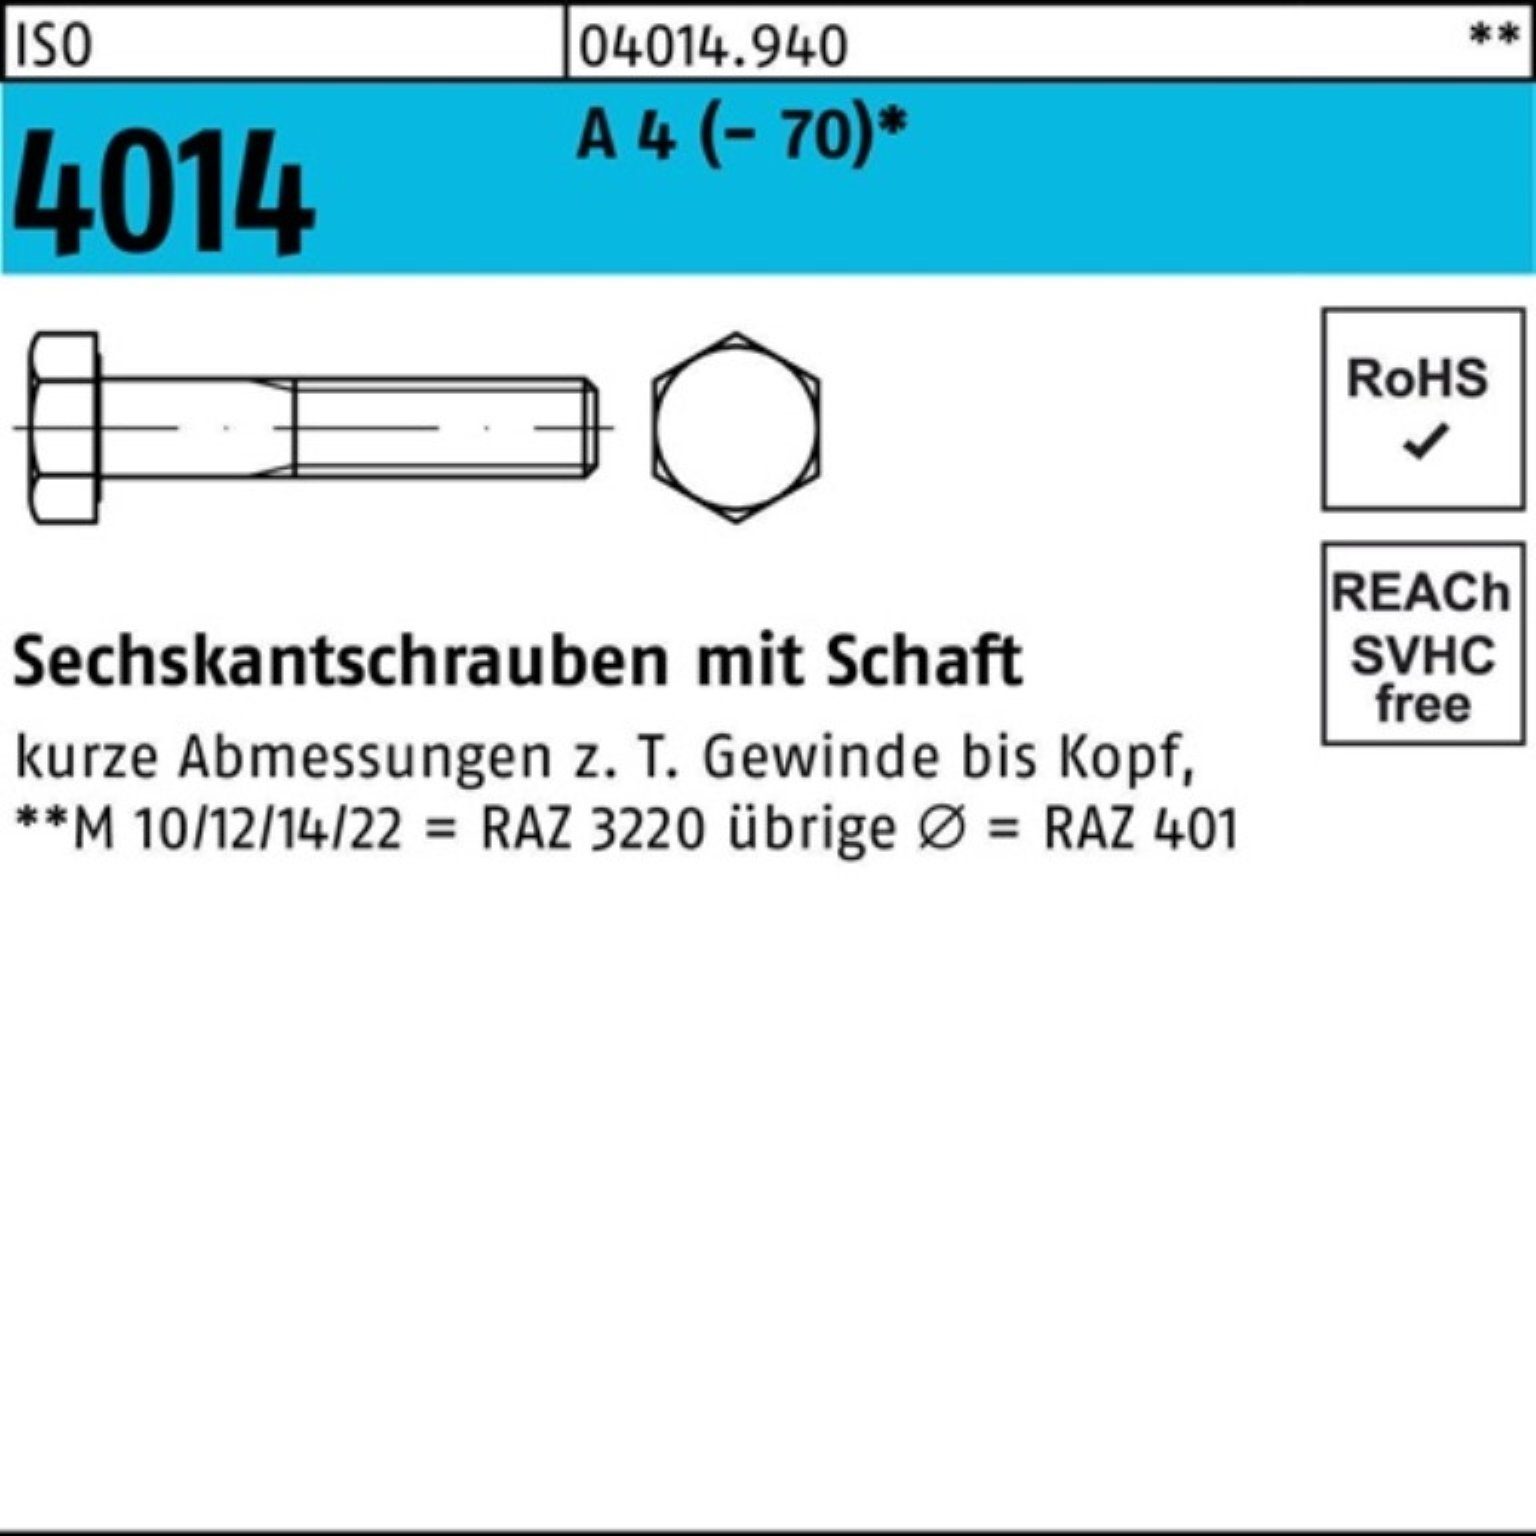 1 Schaft Pack Sechskantschraube M10x 100er 200 4 4014 Sechskantschraube (70) ISO A Bufab St